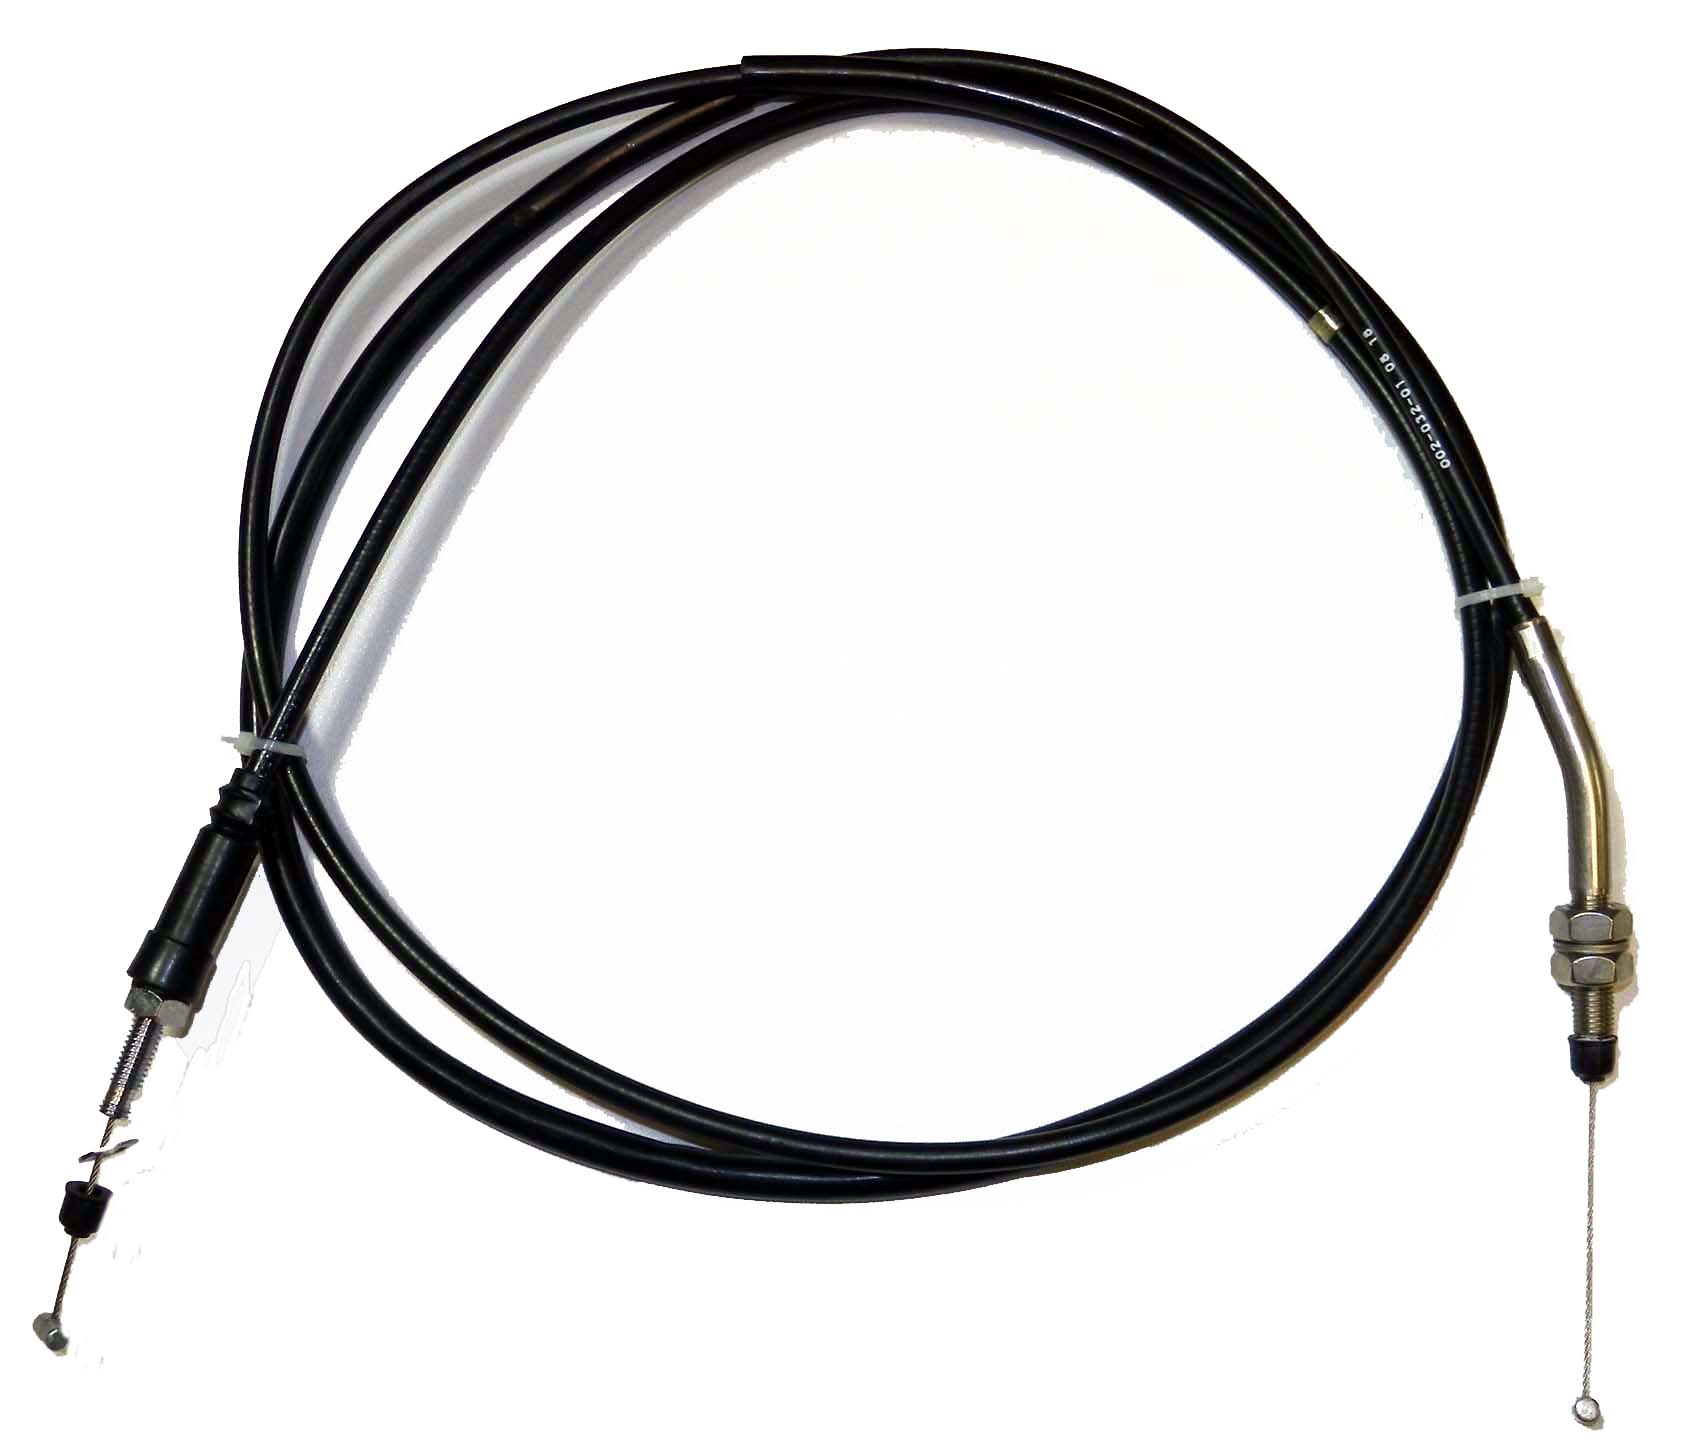 Throttle Cable - Kawasaki PWC (540123758) - Click Image to Close